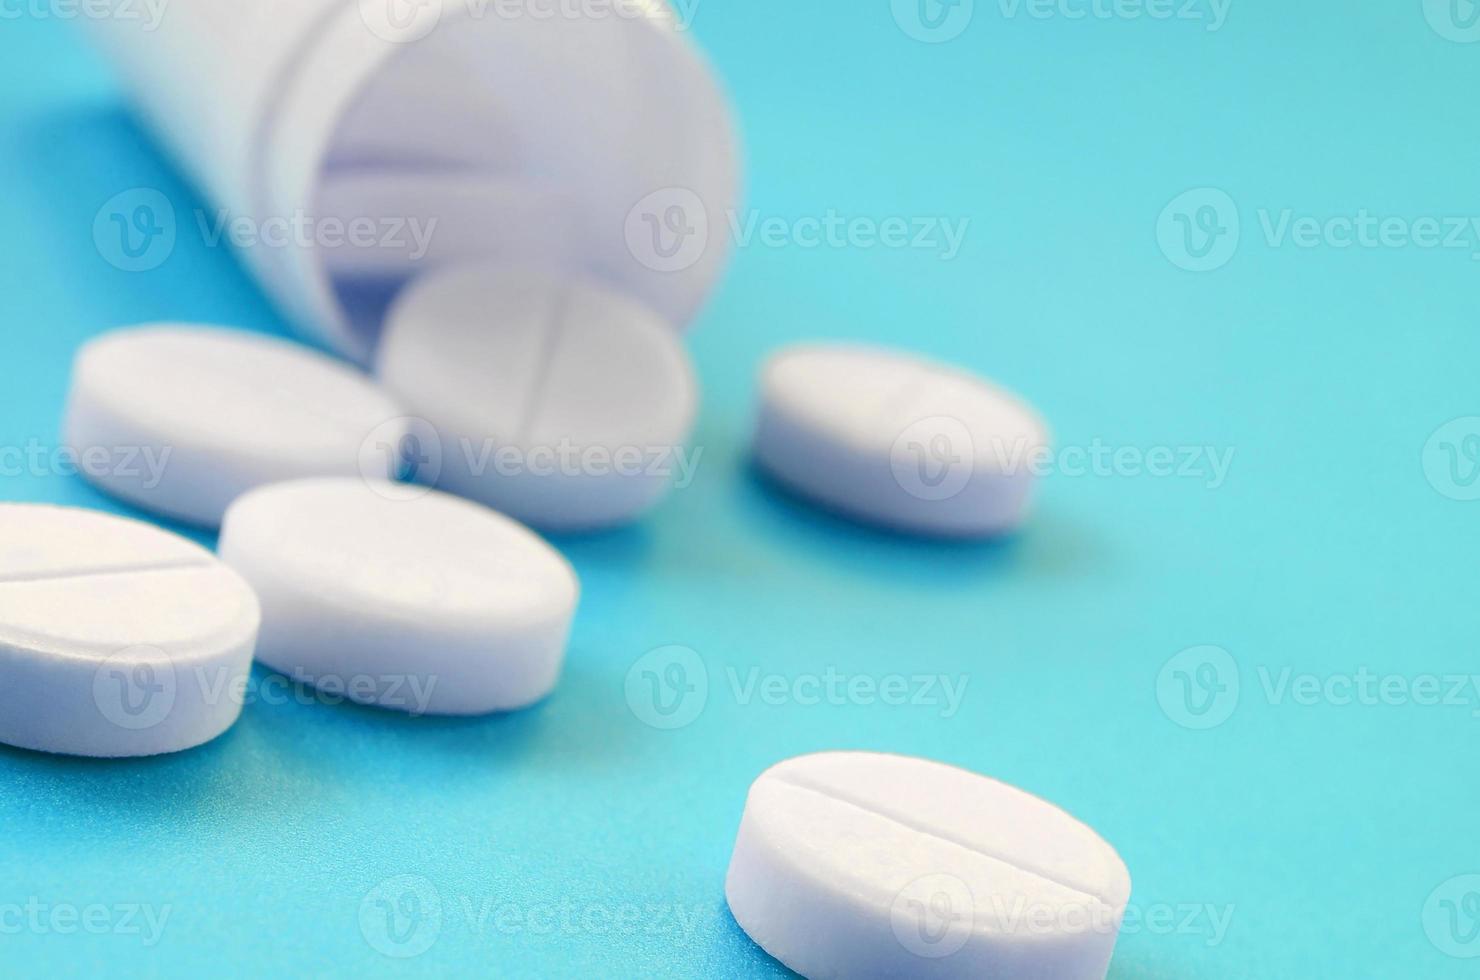 mehrere weiße tabletten fallen aus dem plastikglas auf die blaue oberfläche. Hintergrundbild zu medizinischen und pharmazeutischen Themen foto